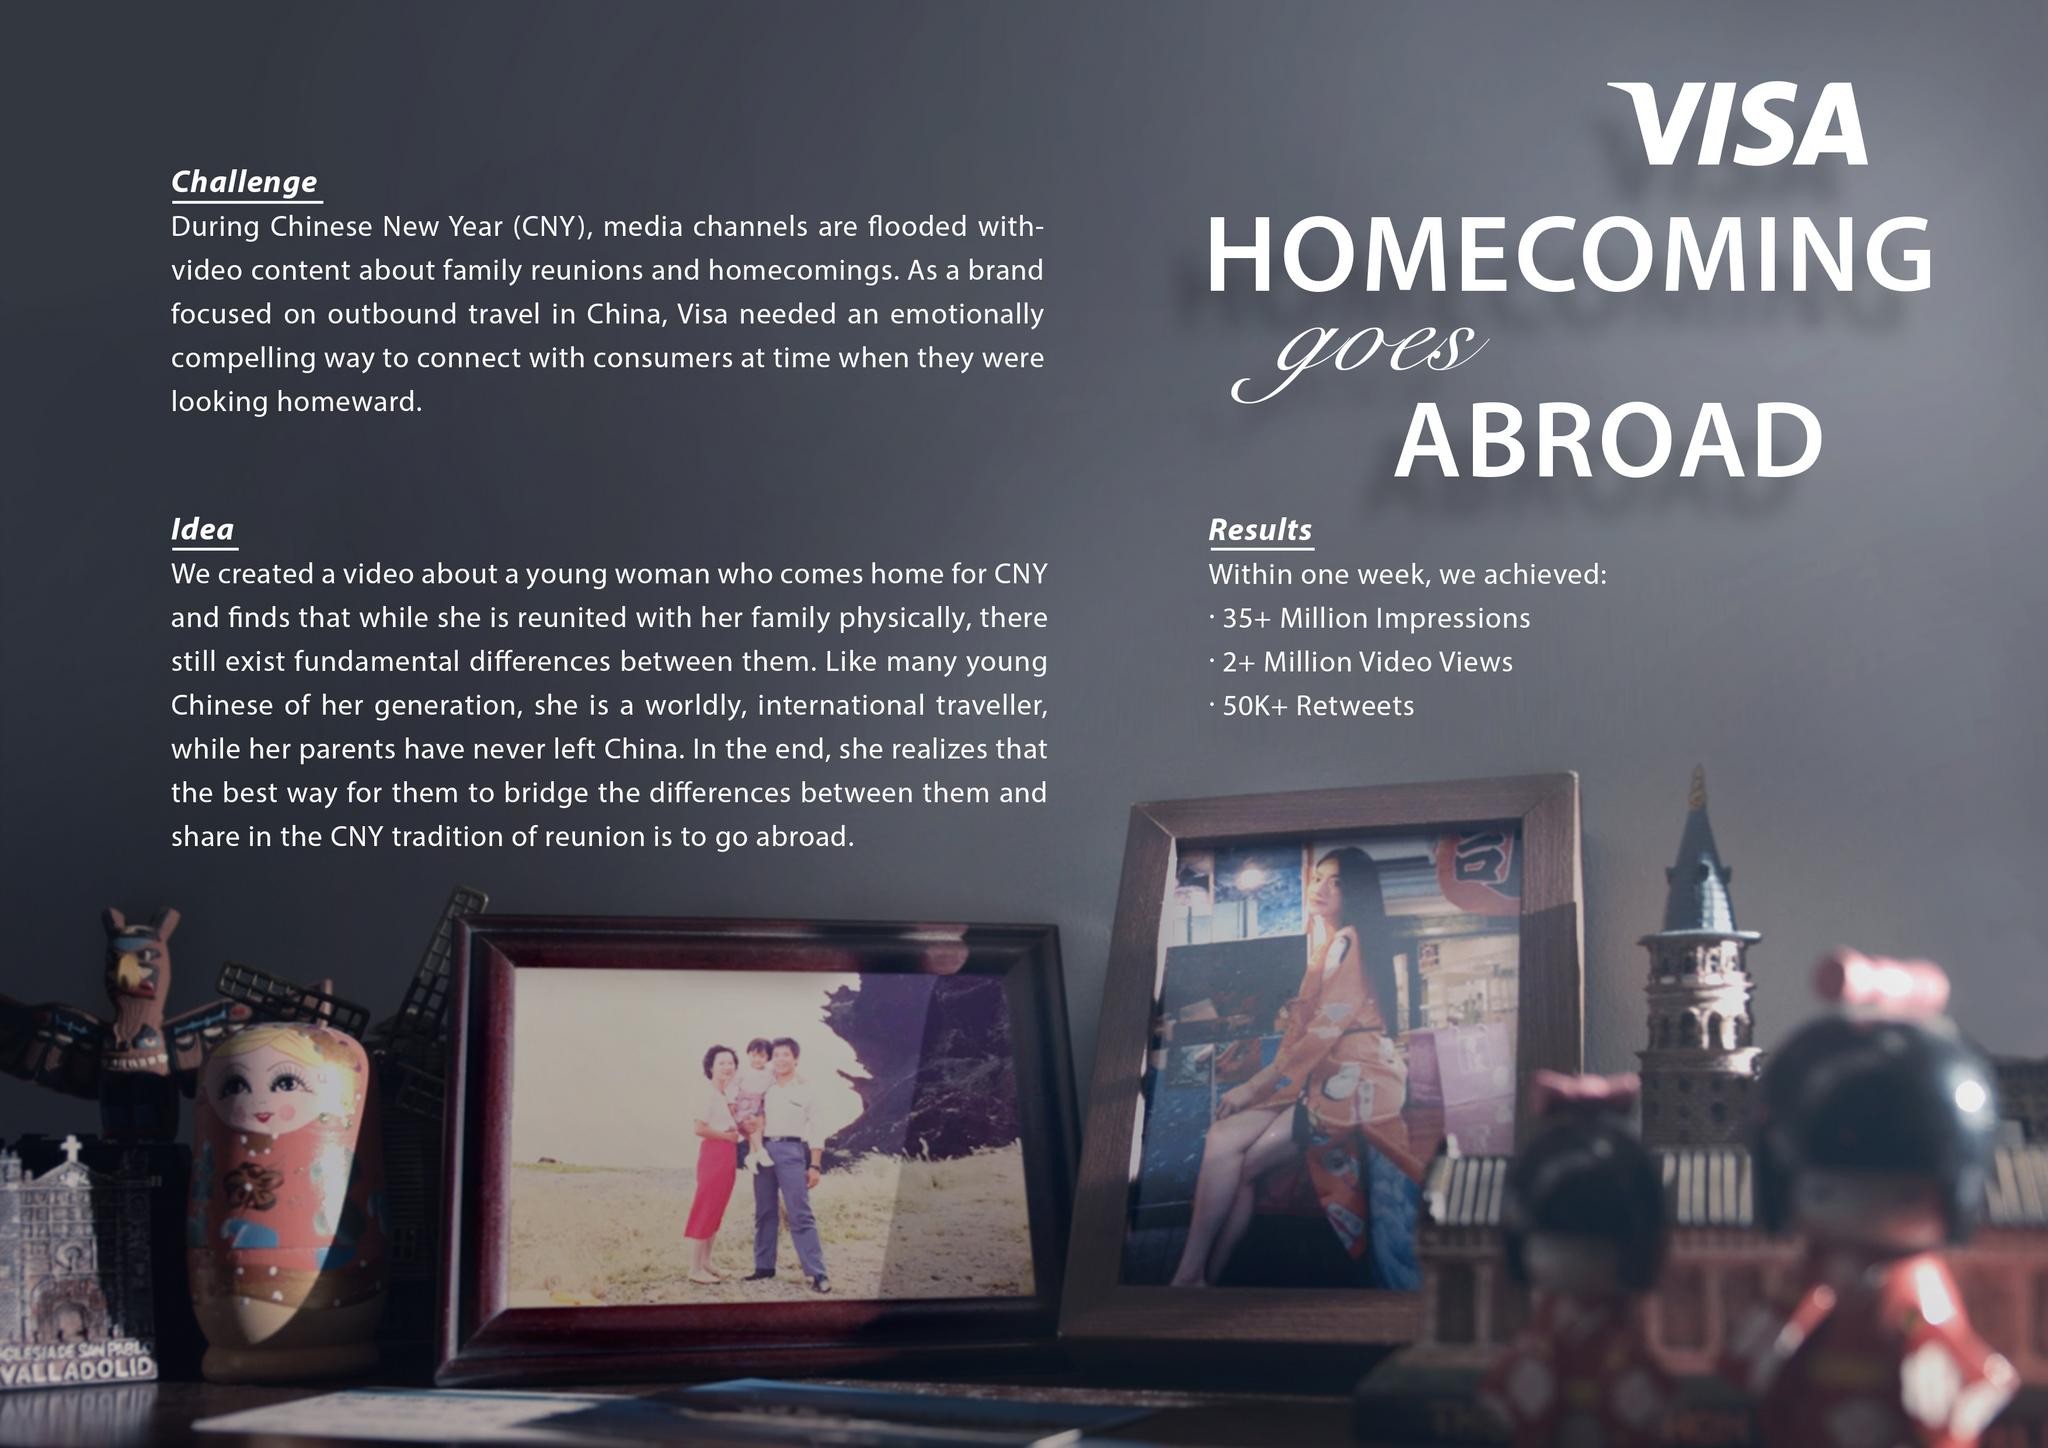 Visa - Homecoming Goes Abroad